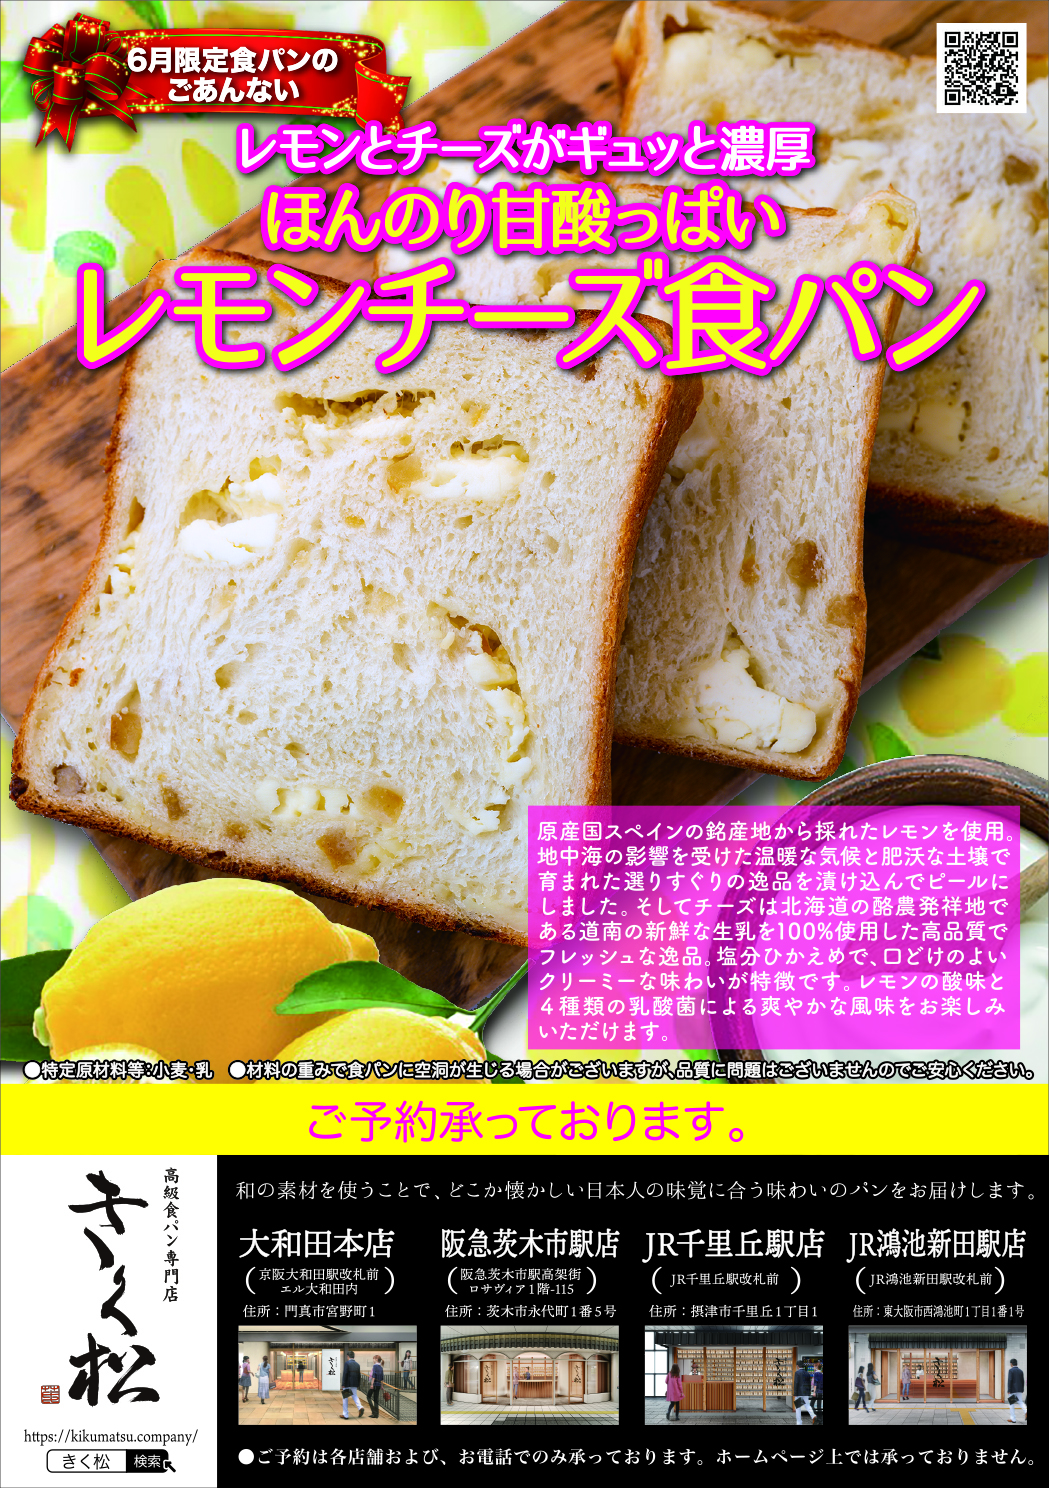 6月の限定食パンは【レモンとチーズがギュッと濃厚 ほんのり甘酸っぱい レモンチーズ食パン】